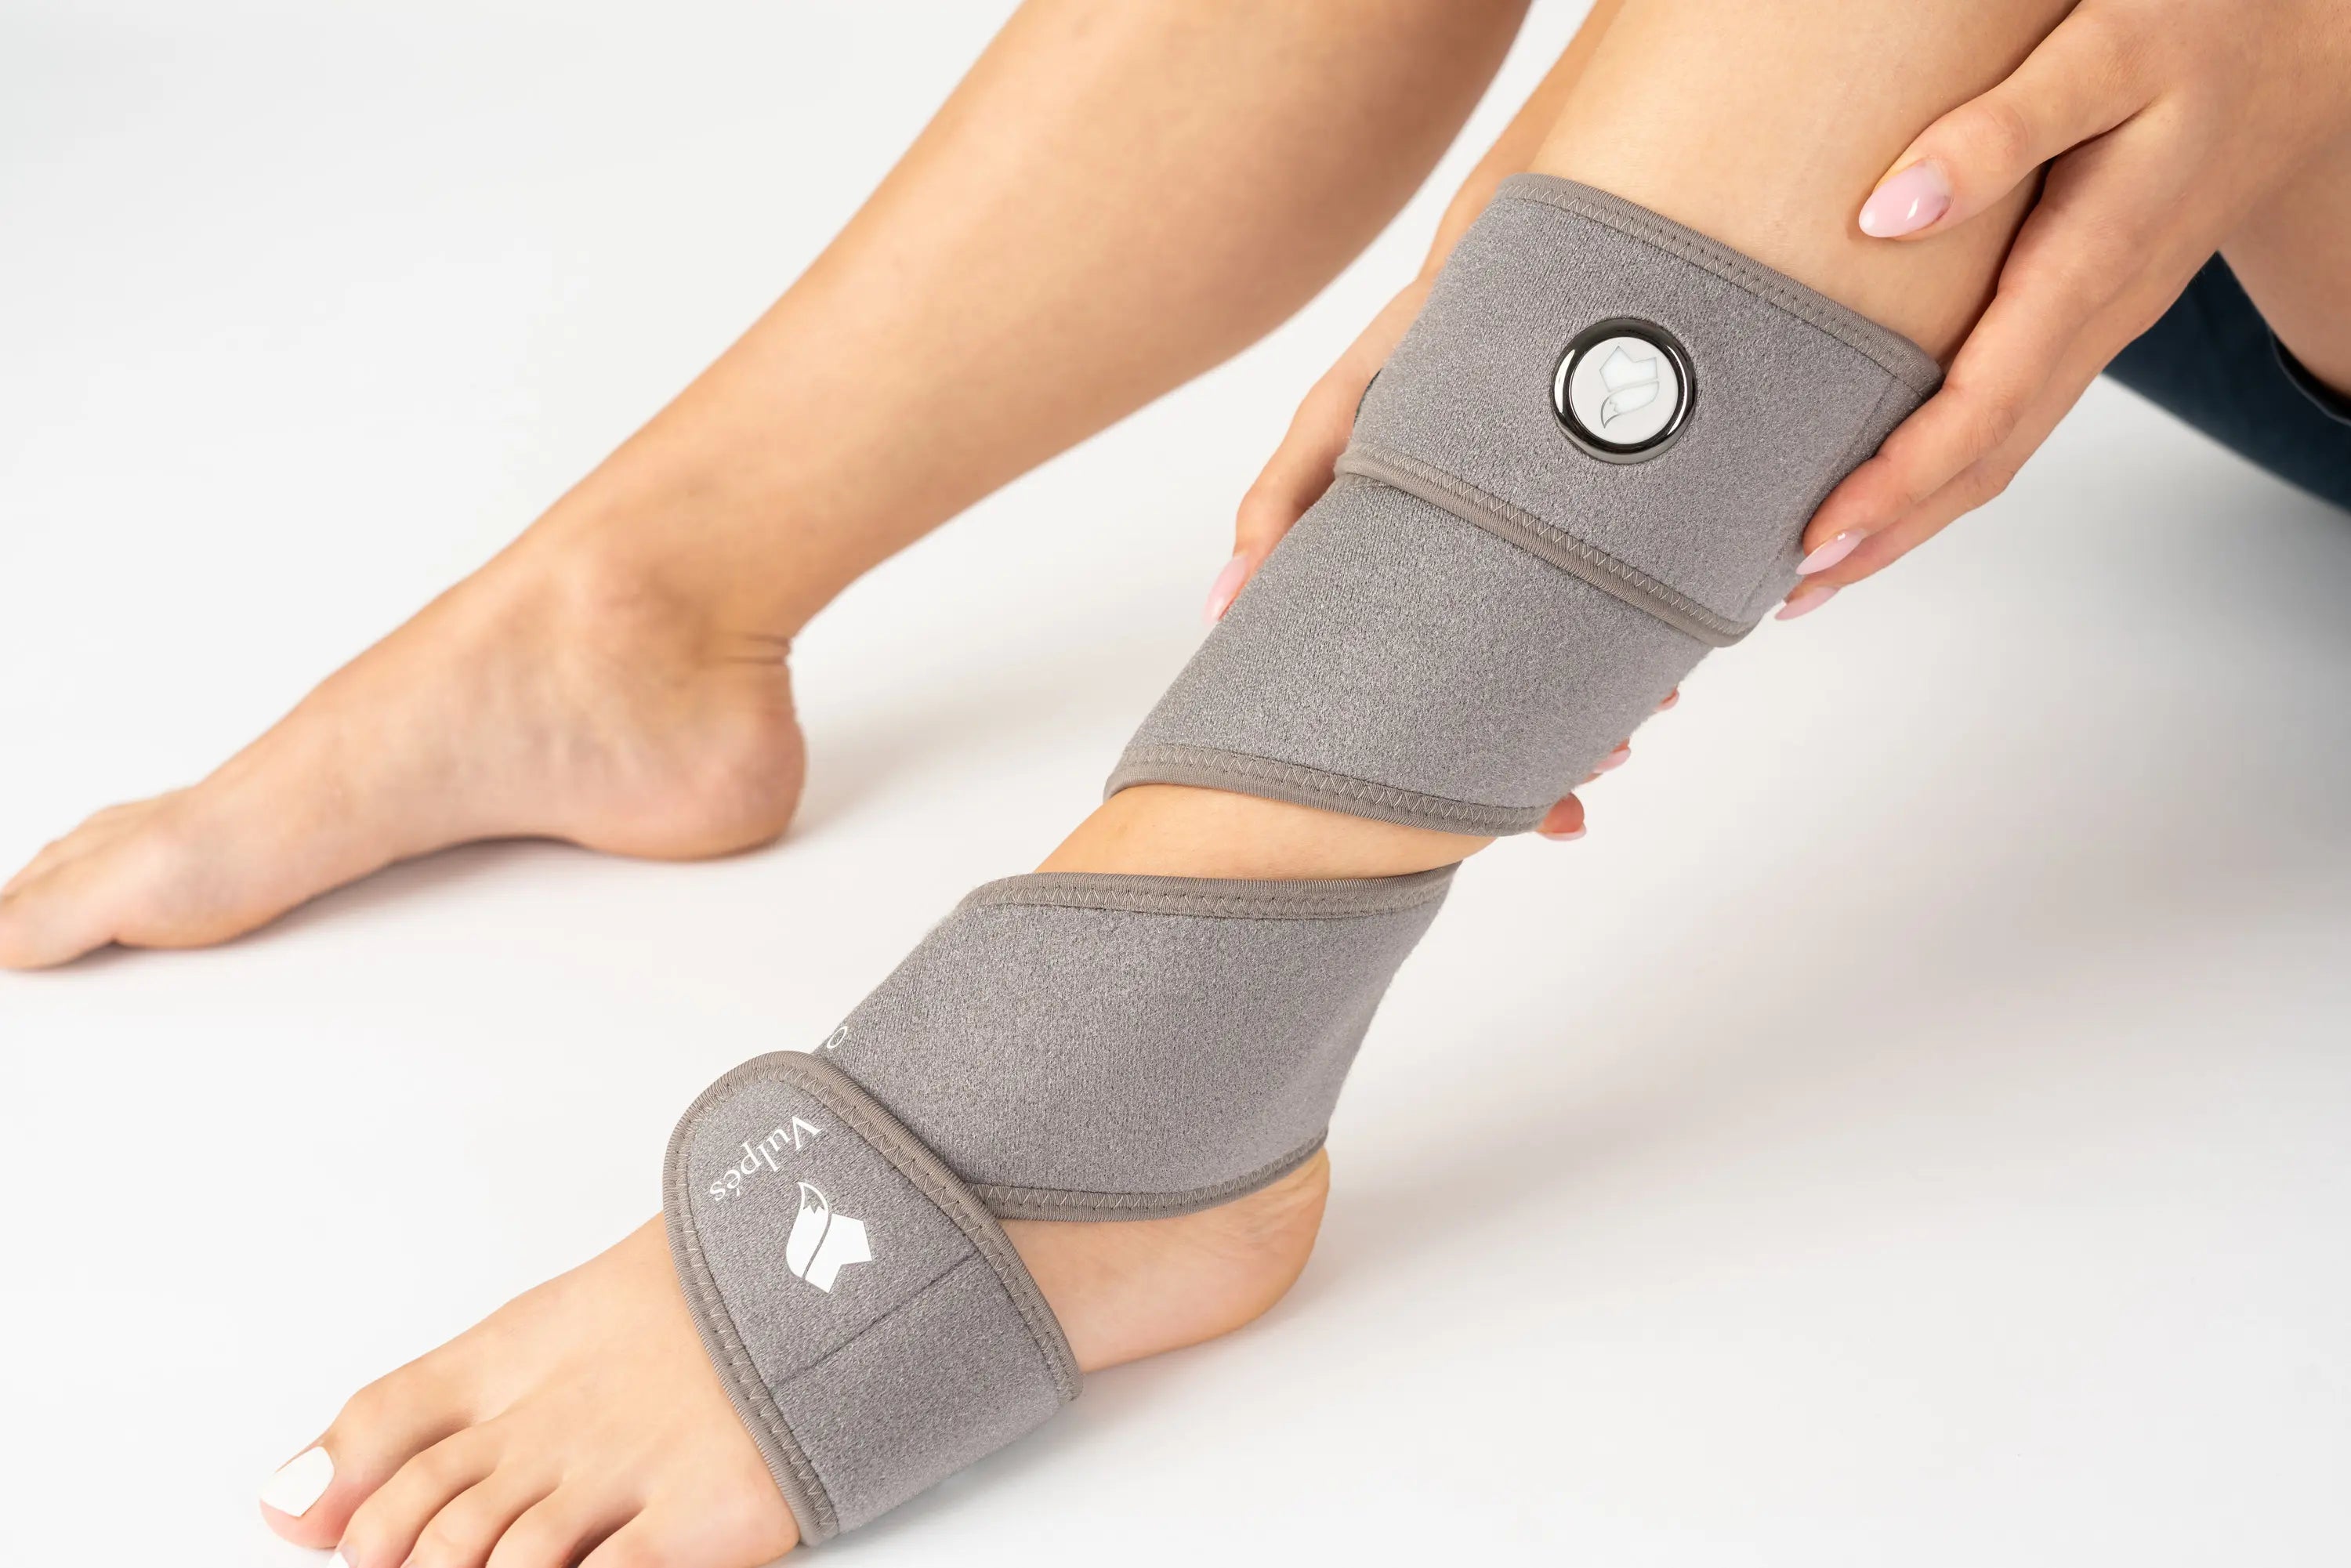 Vulpés RecoveryBrace Pro - Ankle support | Ankle bandage brace